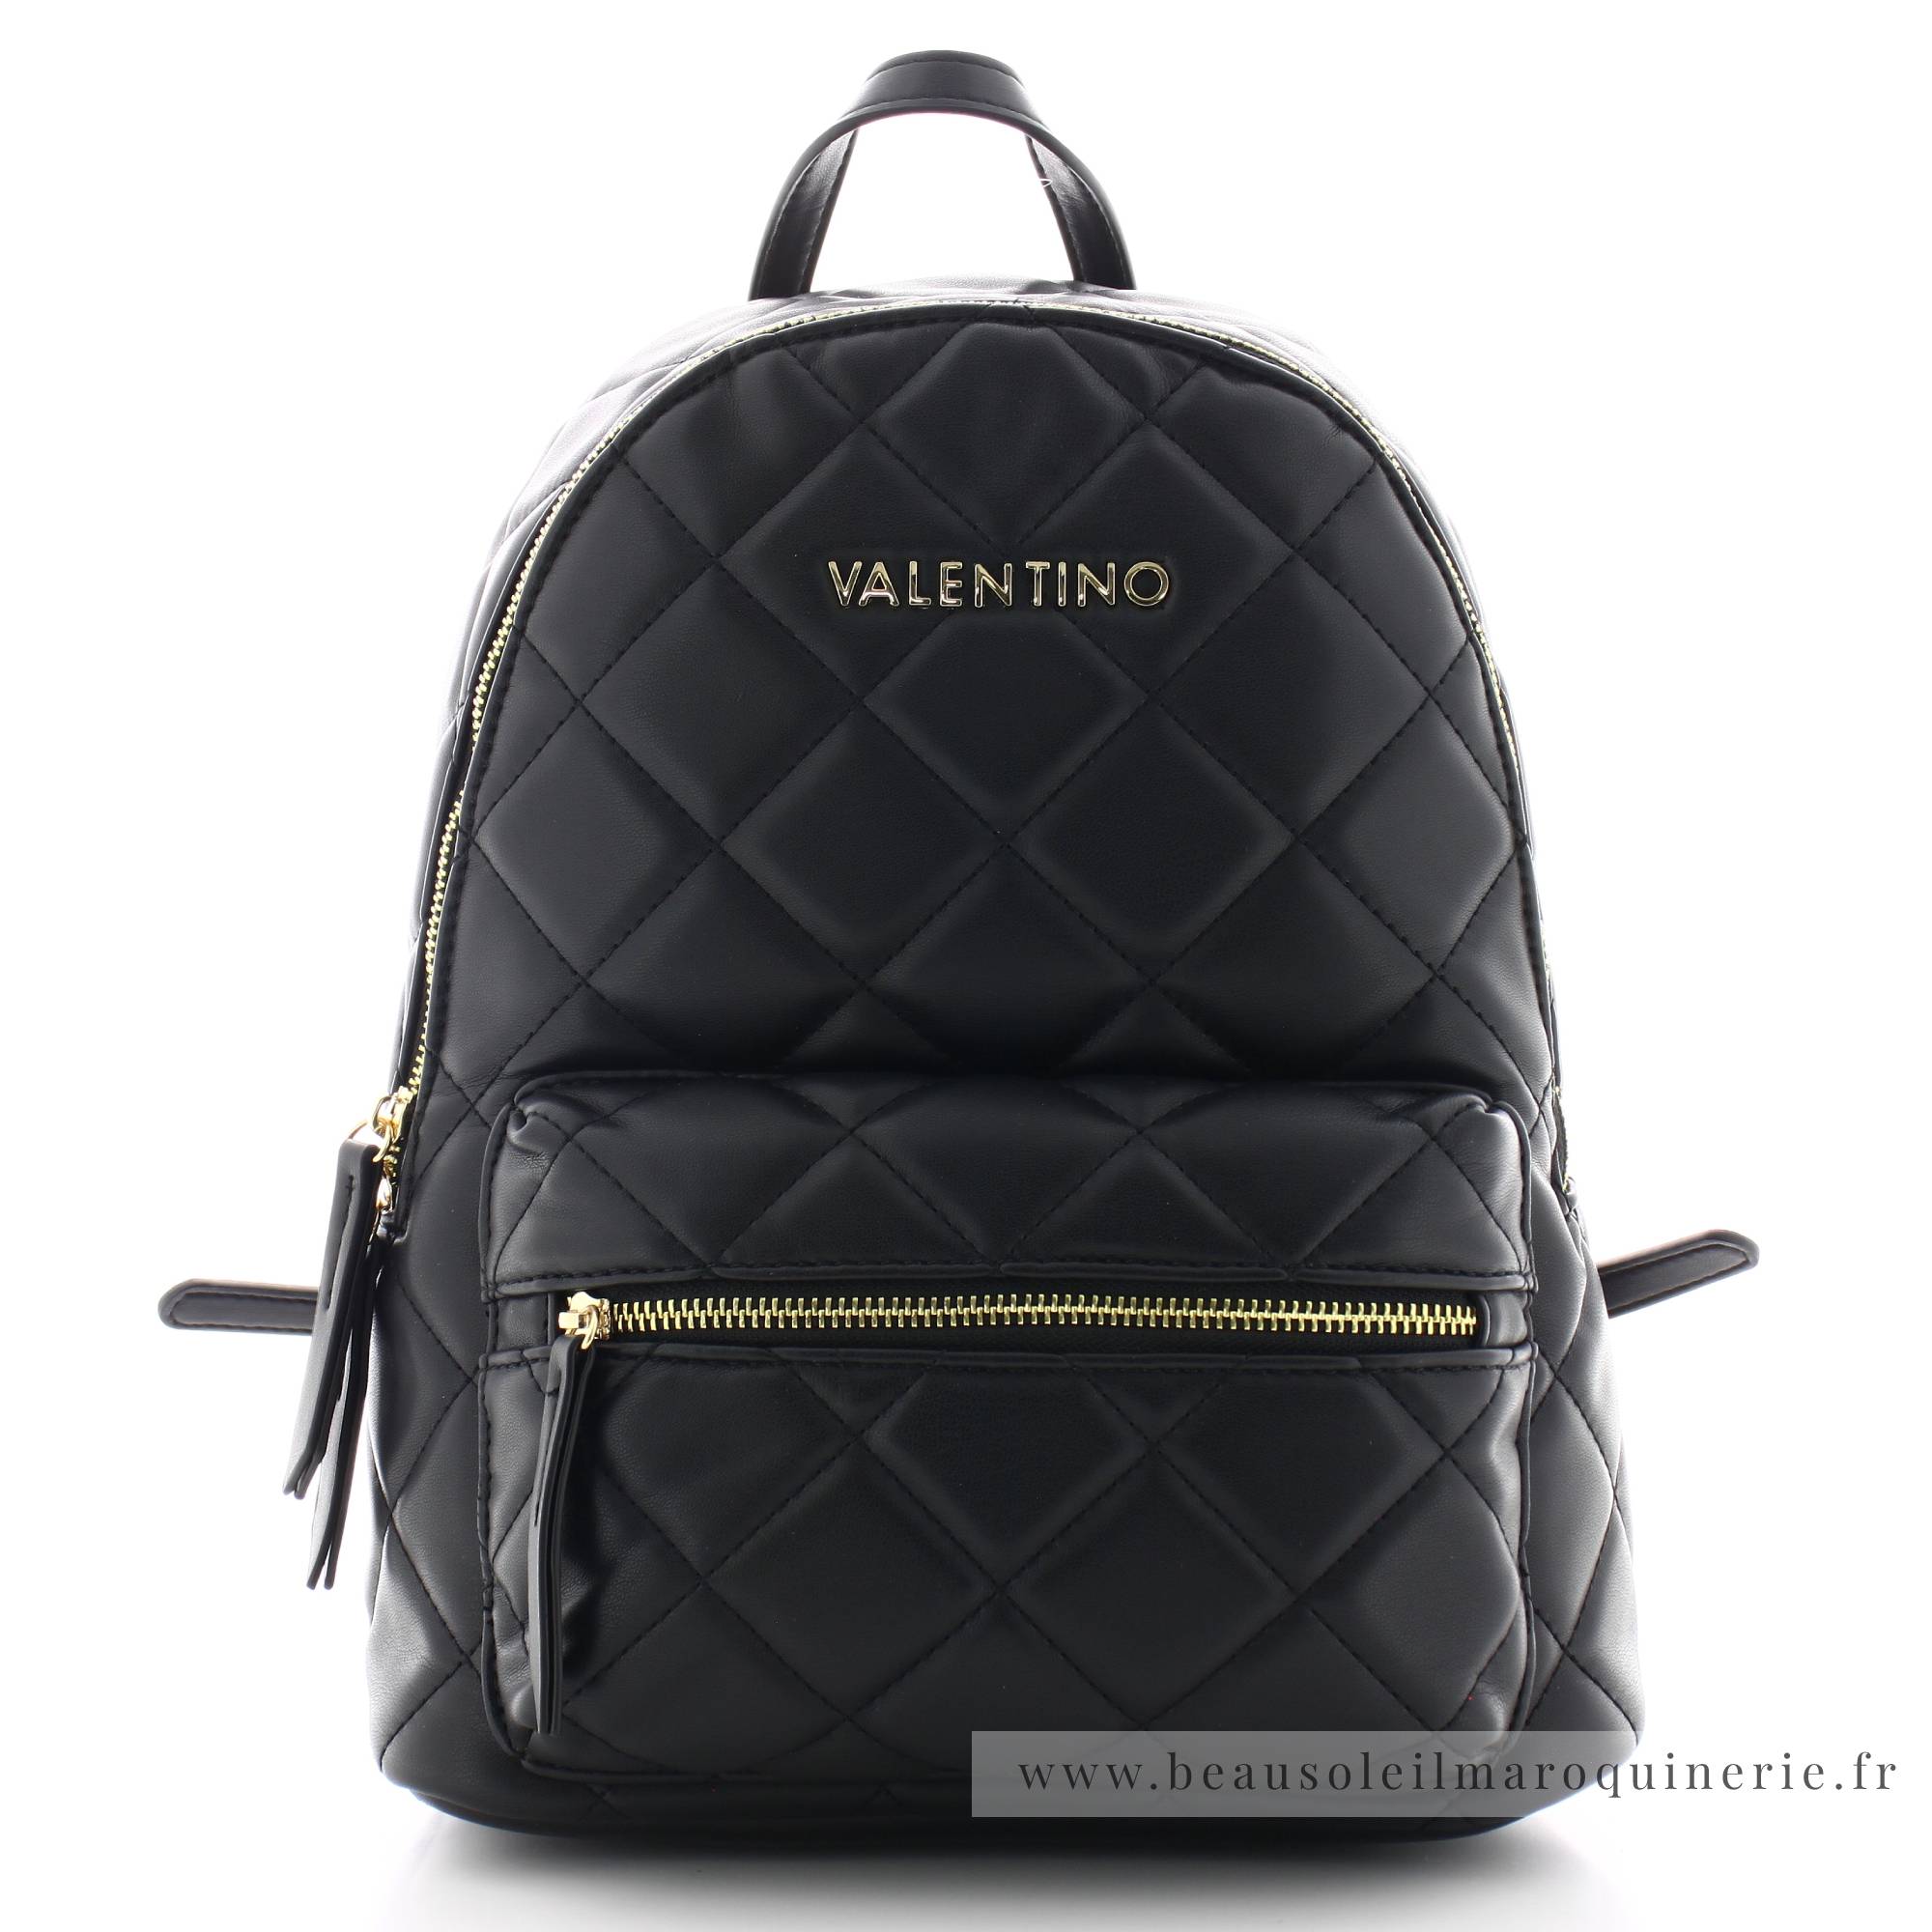 Sac à dos Valentino Bags design matelassé Ocarina VBS3KK37. Retour offert !